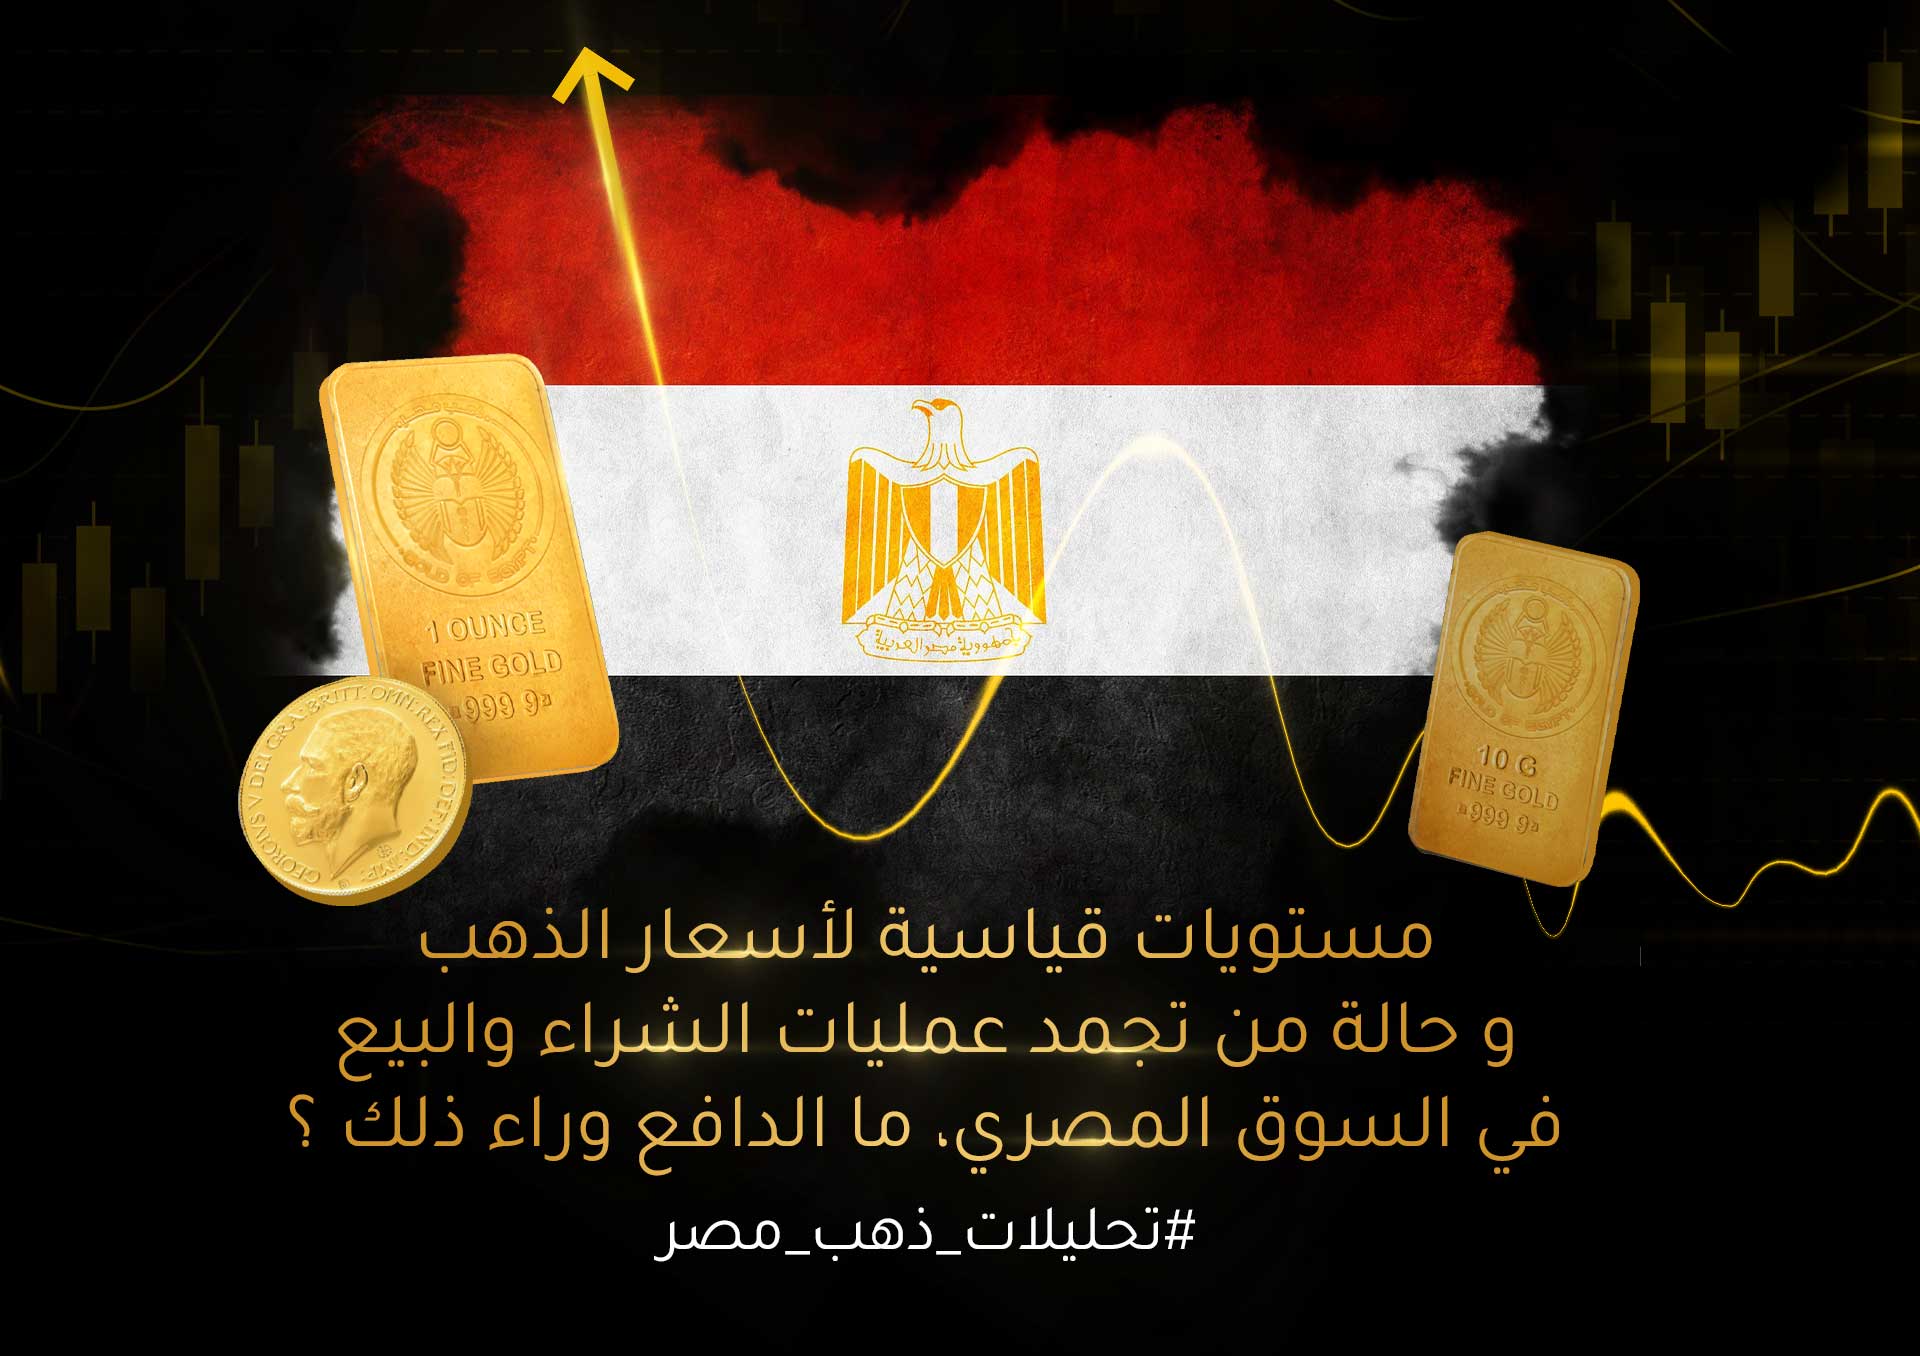 أسعار الذهب في مصر عند مستويات قياسية و حالة من تجمد عمليات الشراء والبيع في السوق، ما الدافع وراء ذلك ؟ 